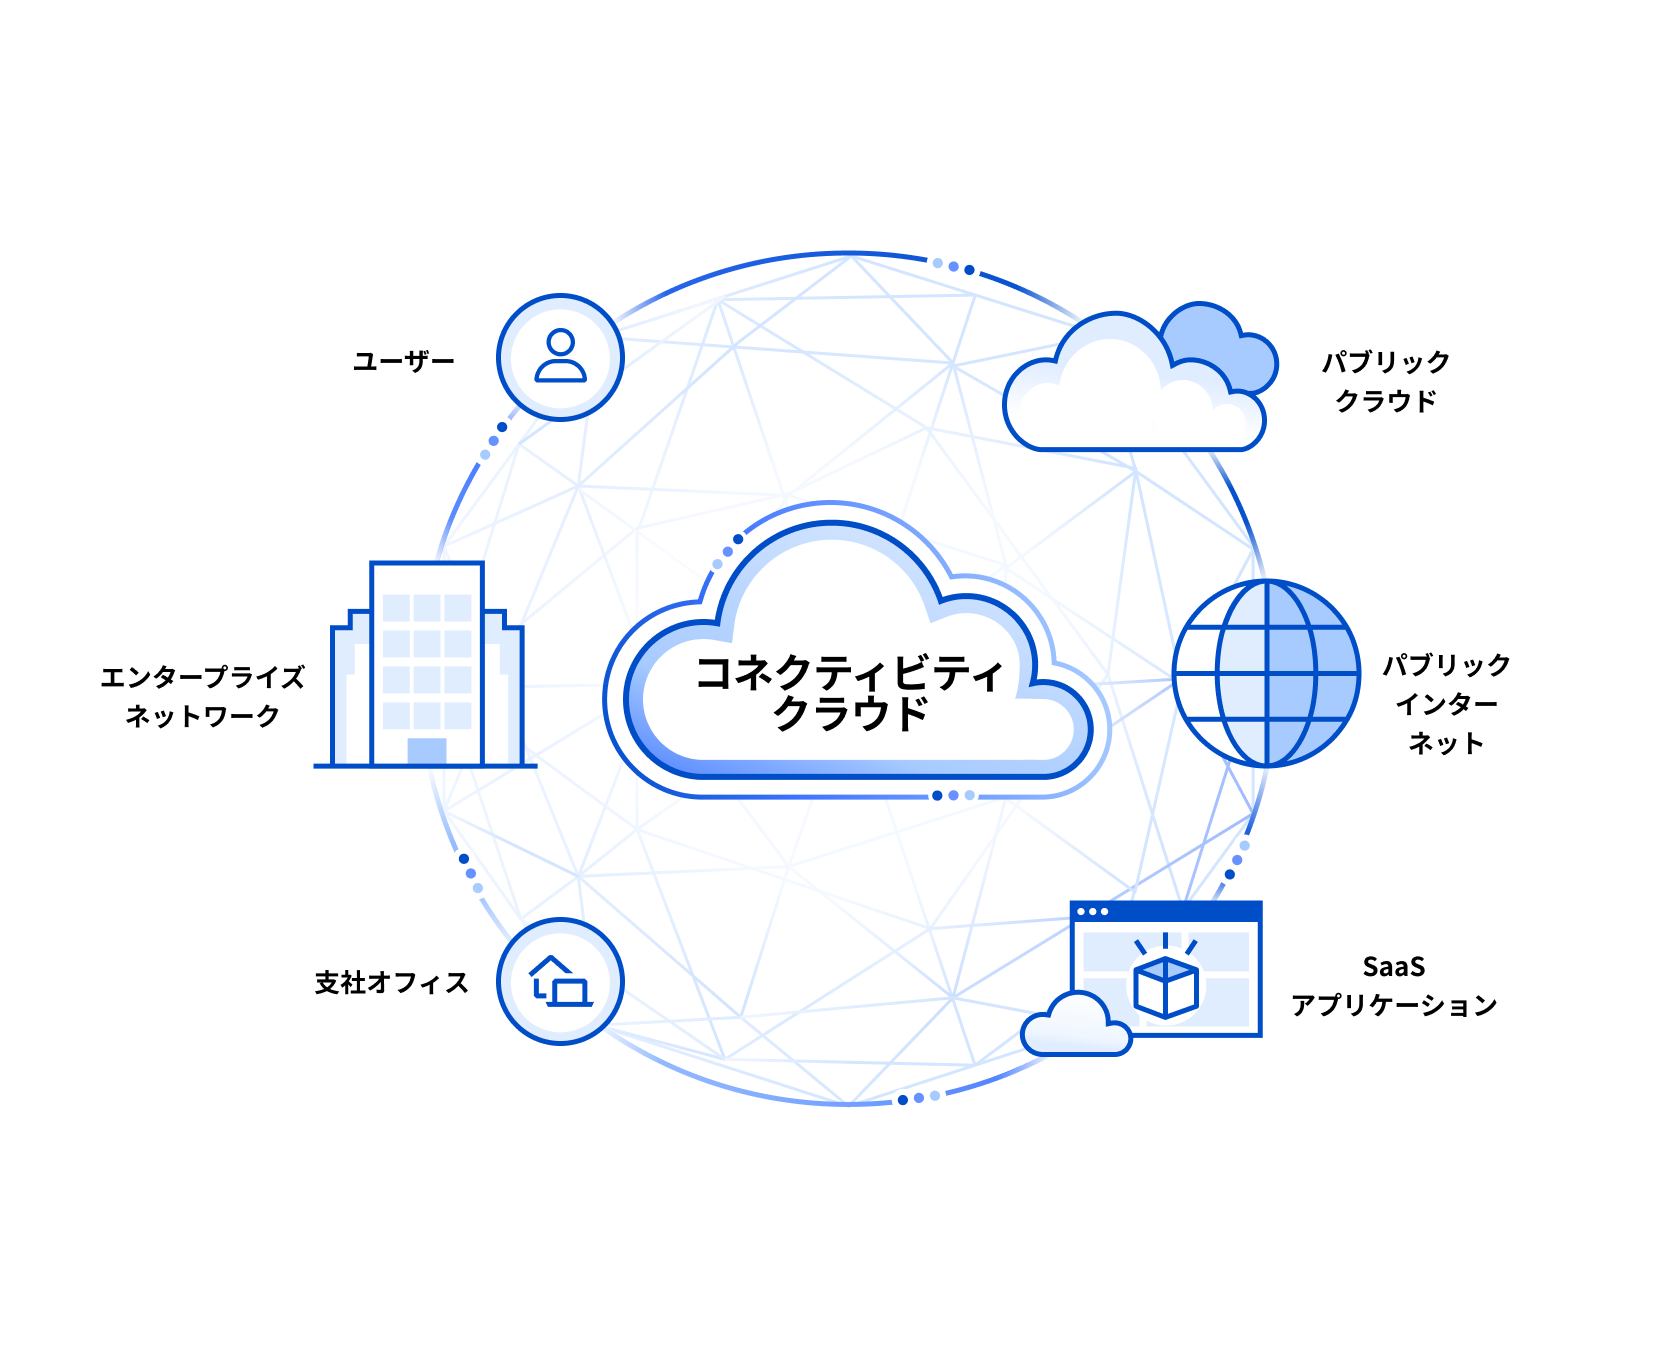 Blueprint Connectivity Cloud - After